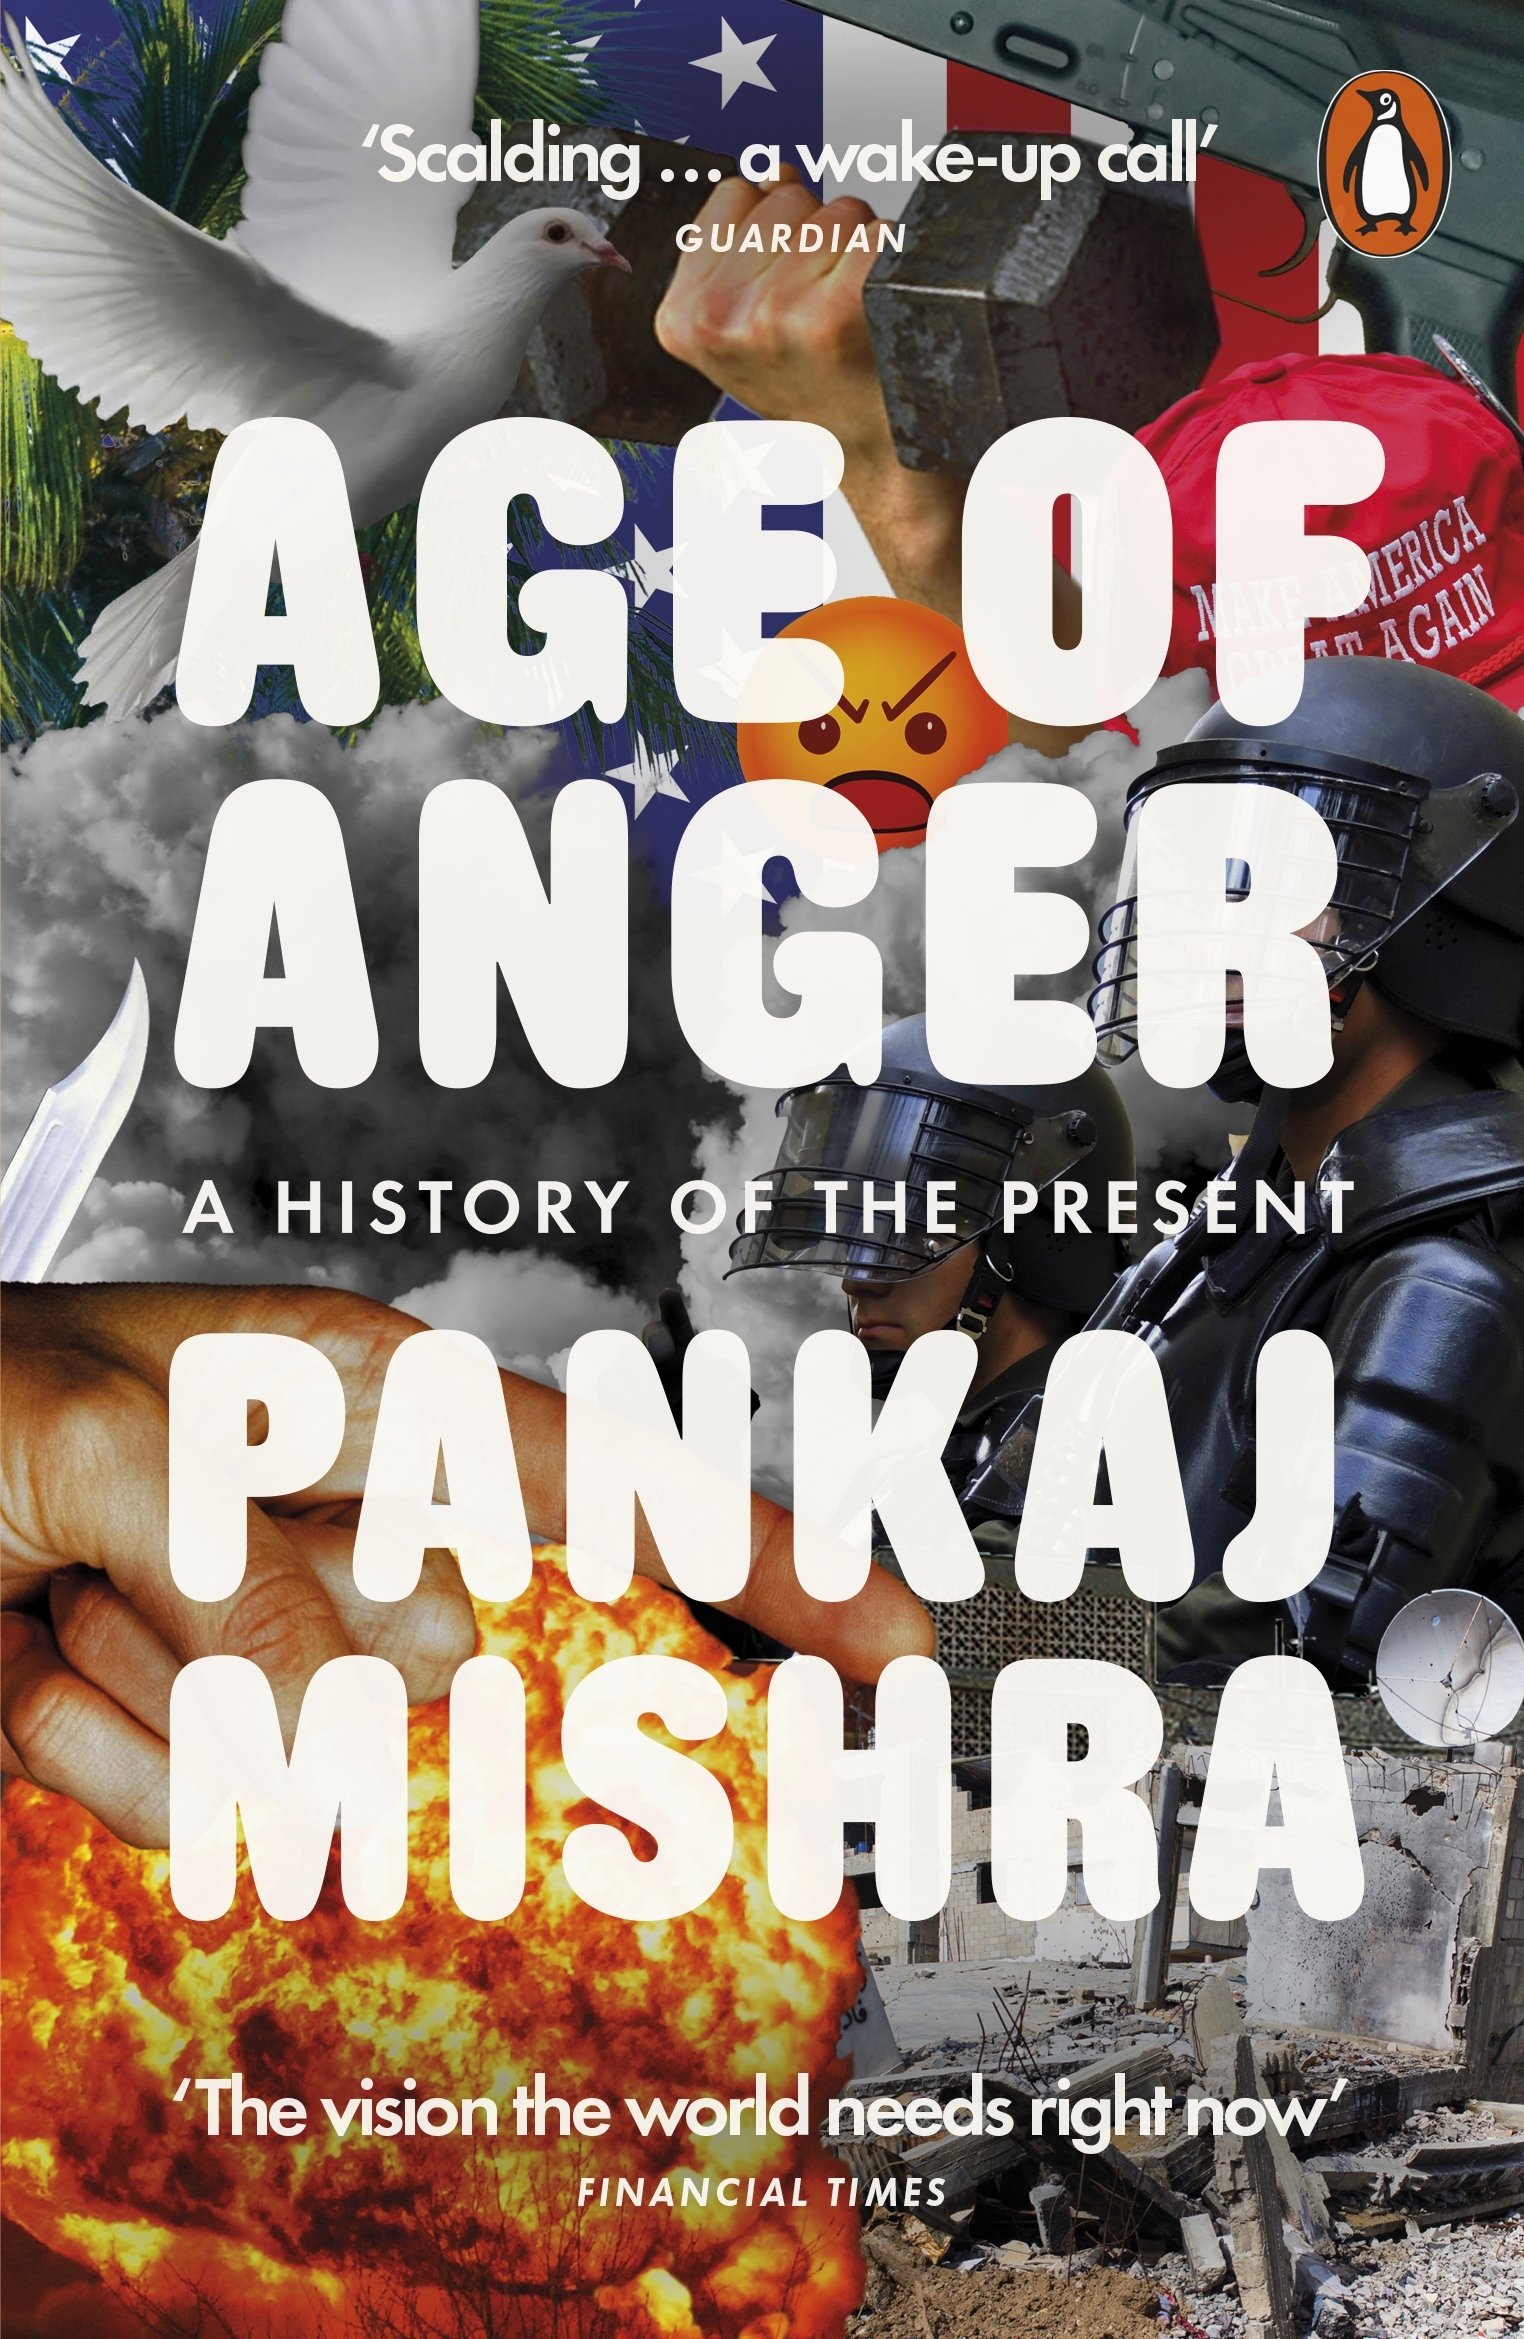 Age of Anger | Pankaj Mishra